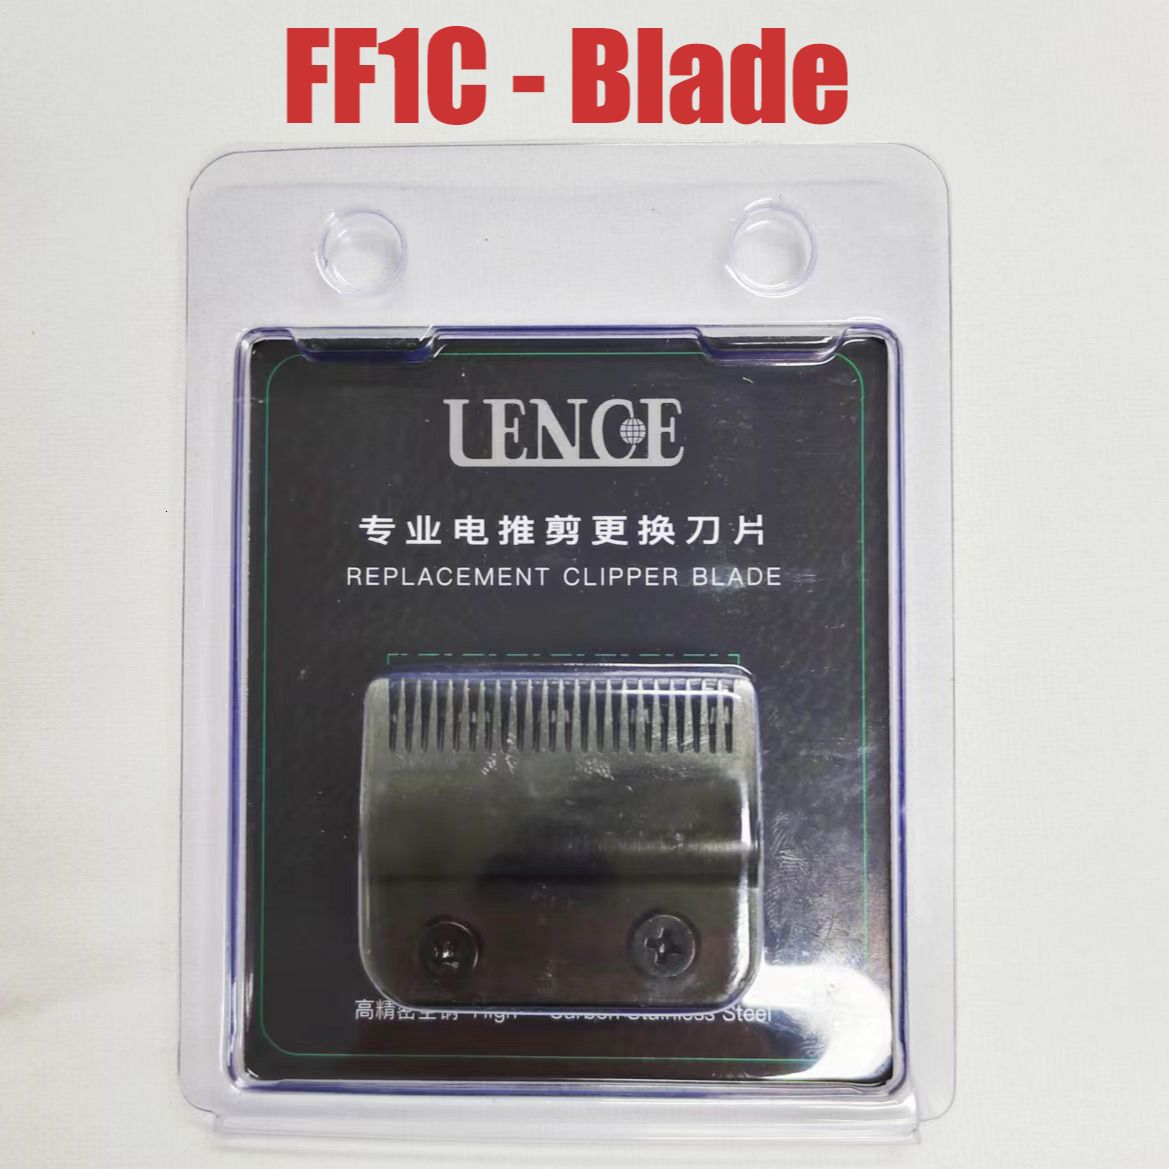 FF1C Blade-Eu Plug